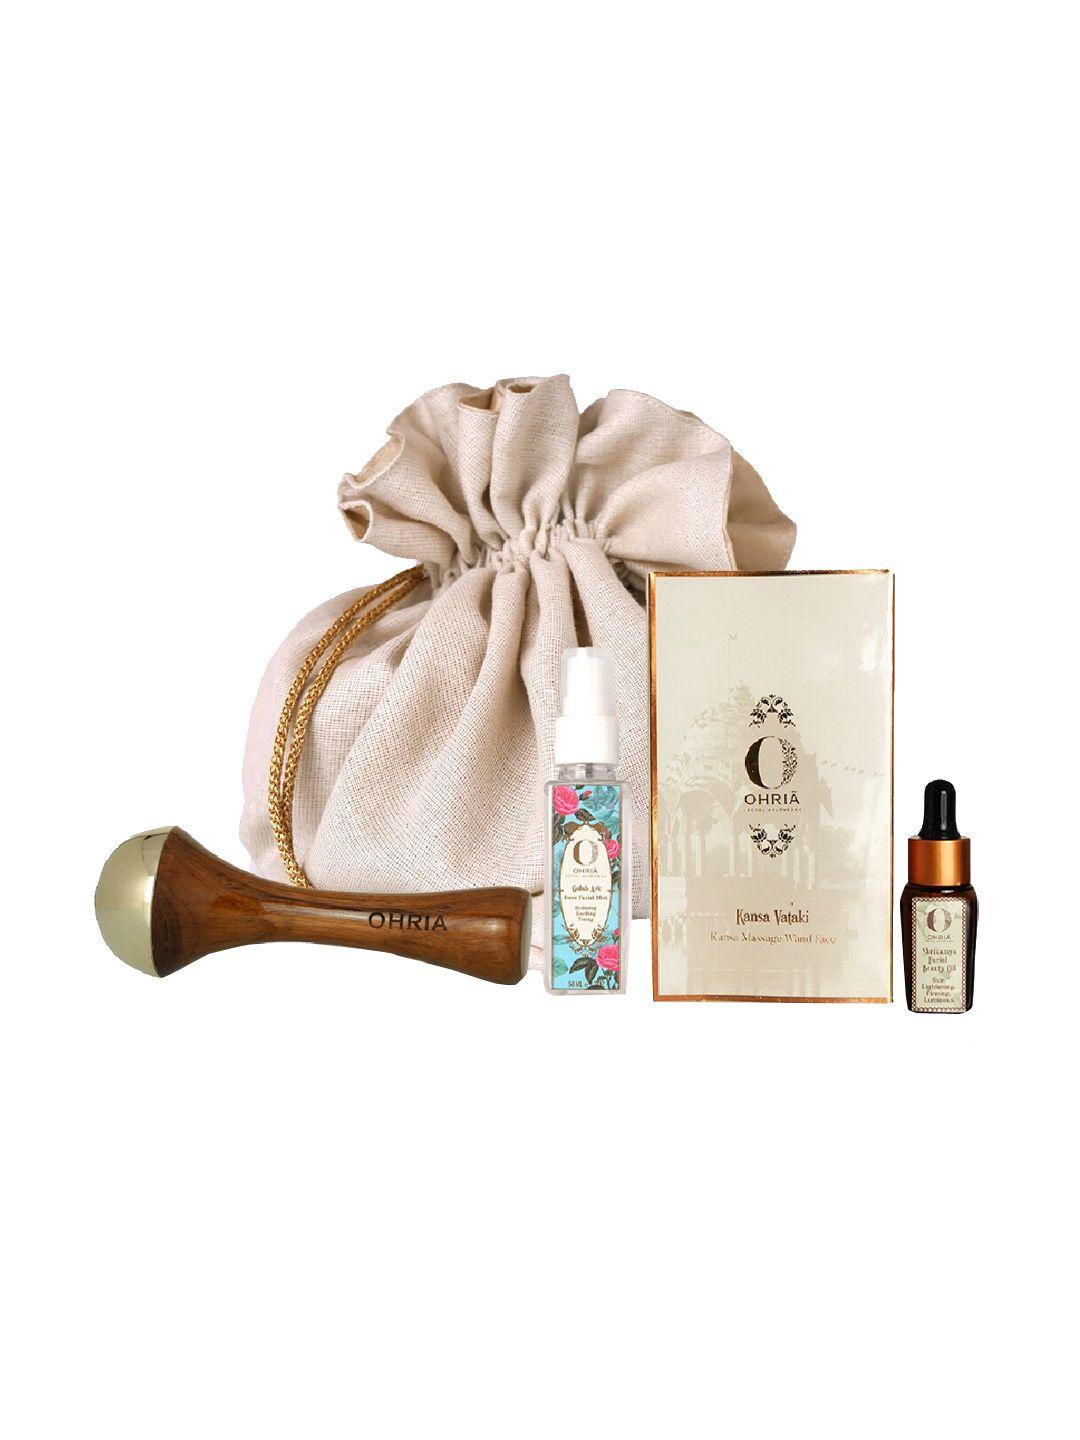 ohria ayurveda kansa face massage ritual kit with kansa face wand